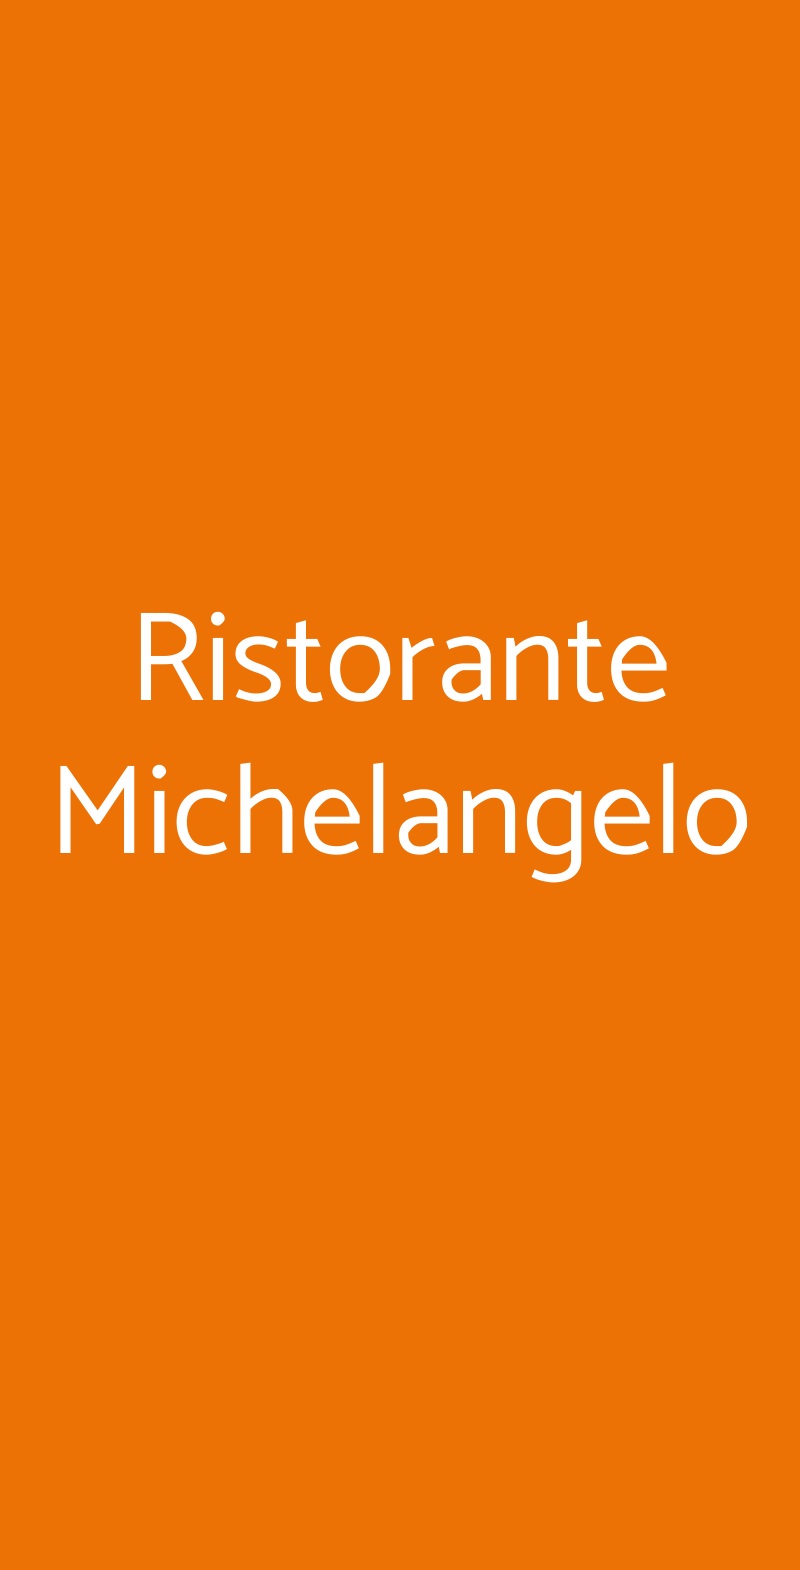 Ristorante Michelangelo Lecce menù 1 pagina